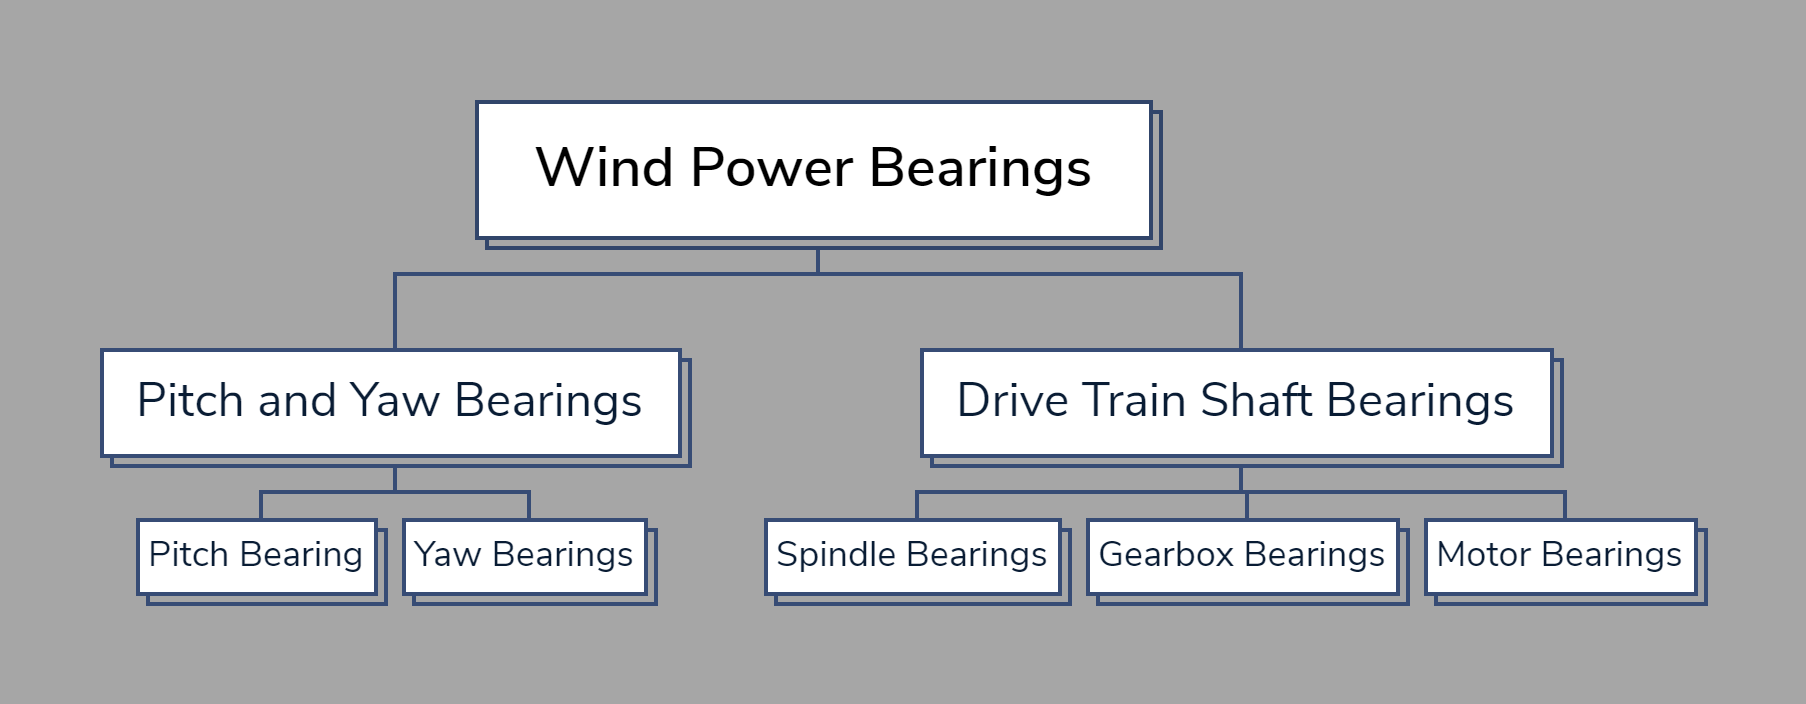 Wind Power Bearings.png